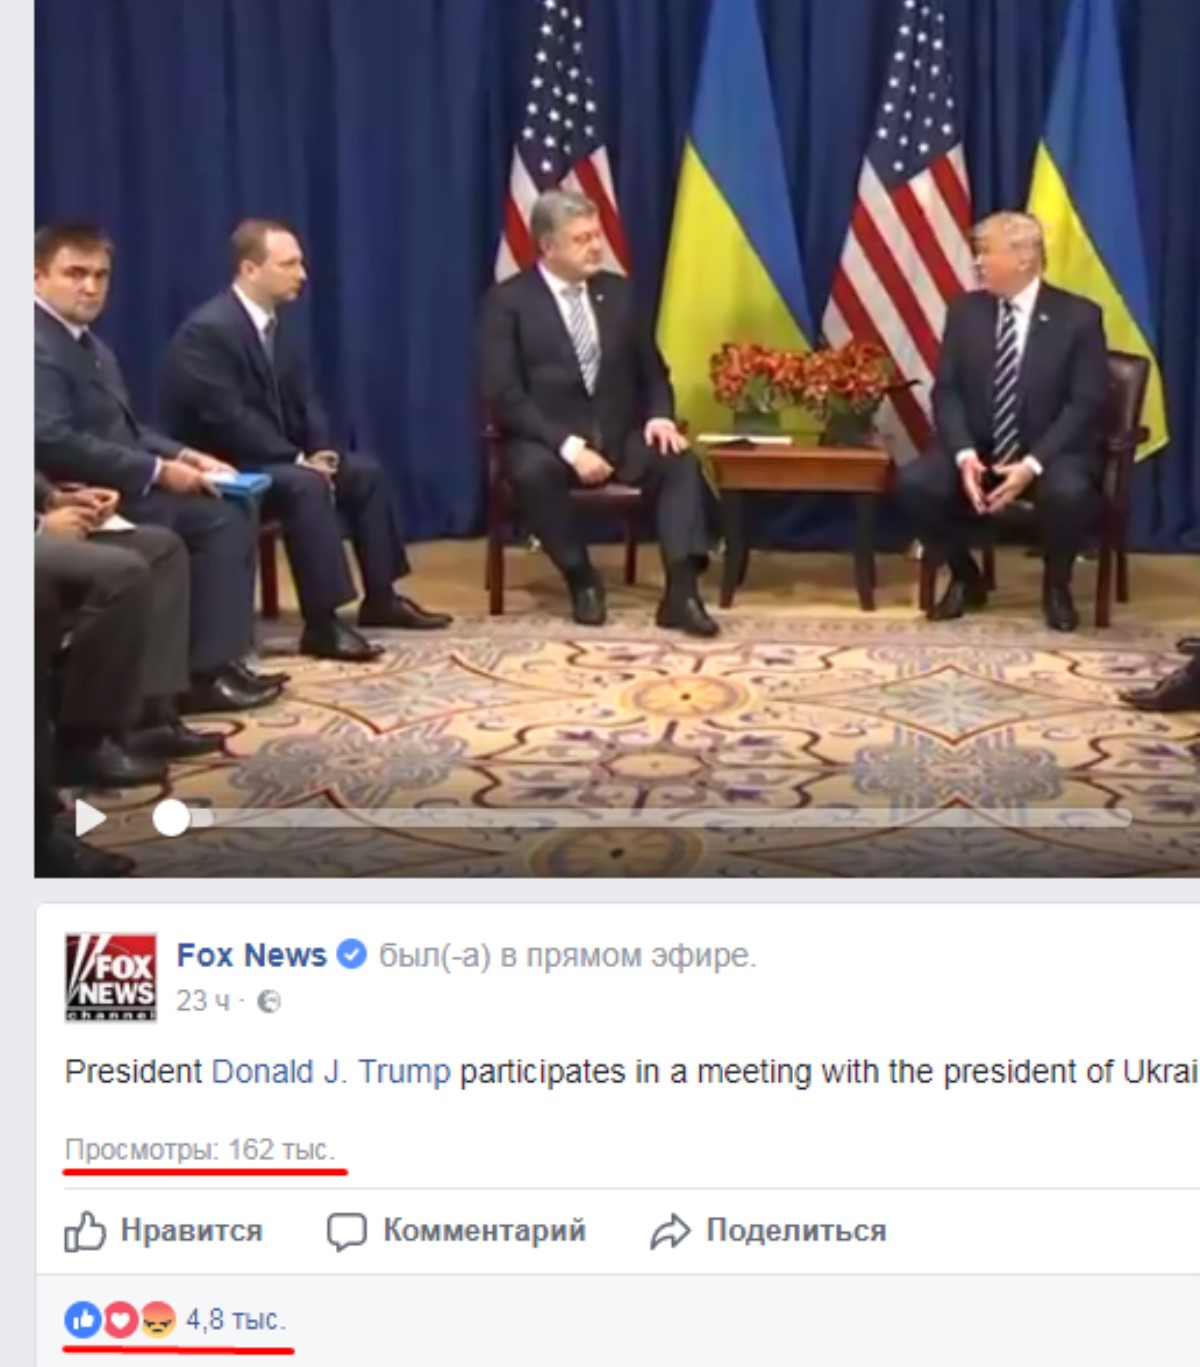 Тысячи просмотров и комментариев: у видео встречи Порошенко с Трампом успех в сети